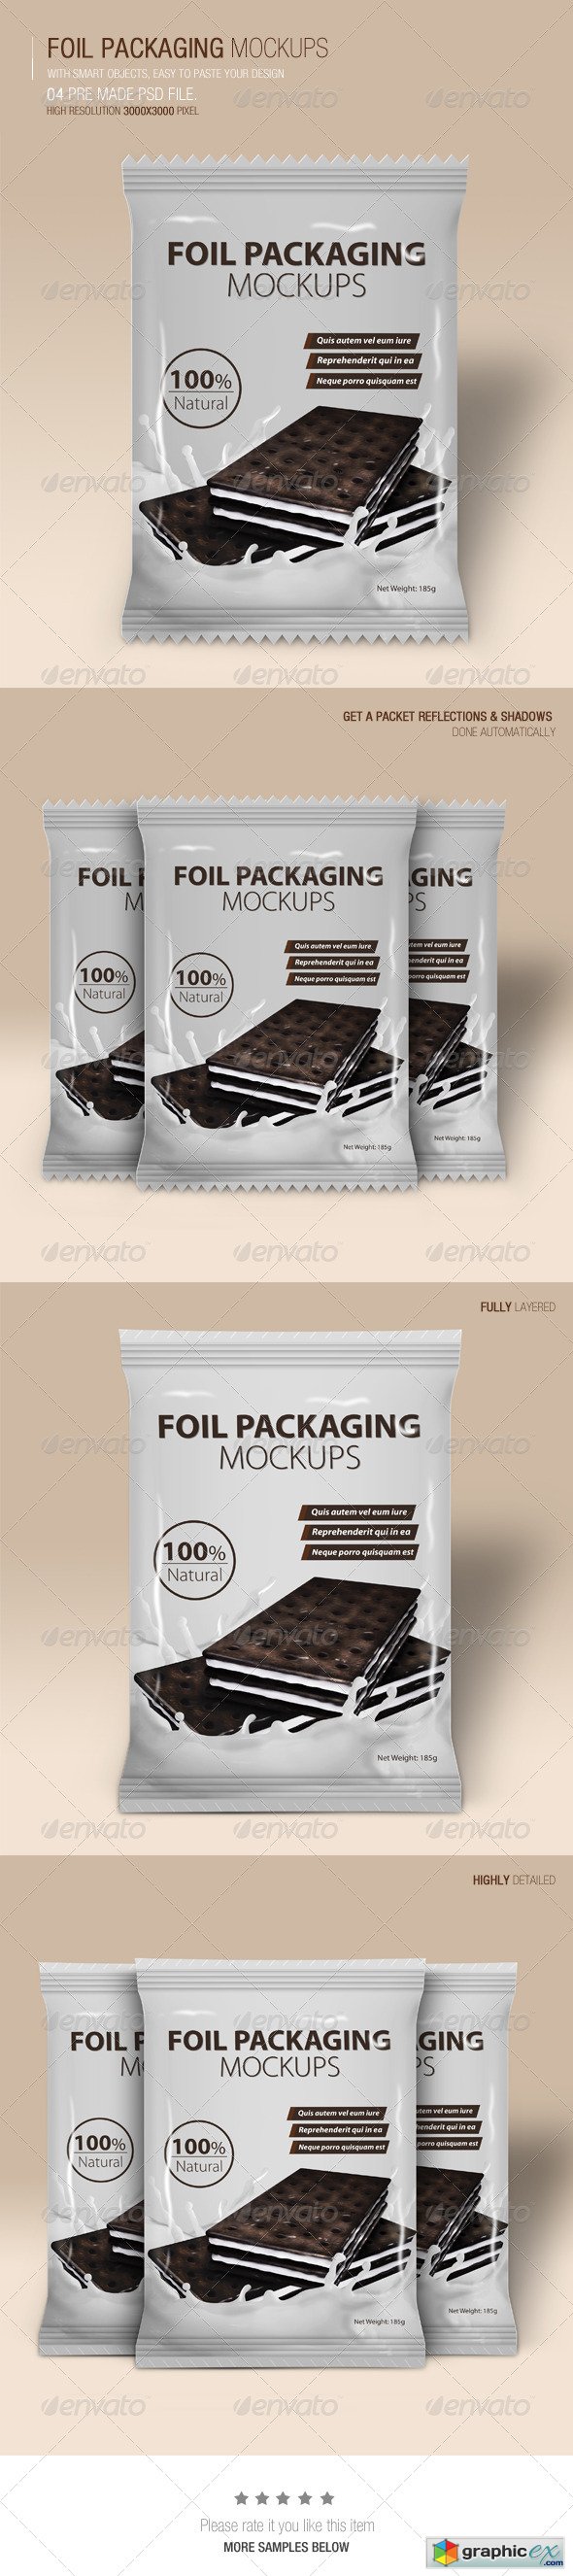 Foil Packaging Mockups Vol.2